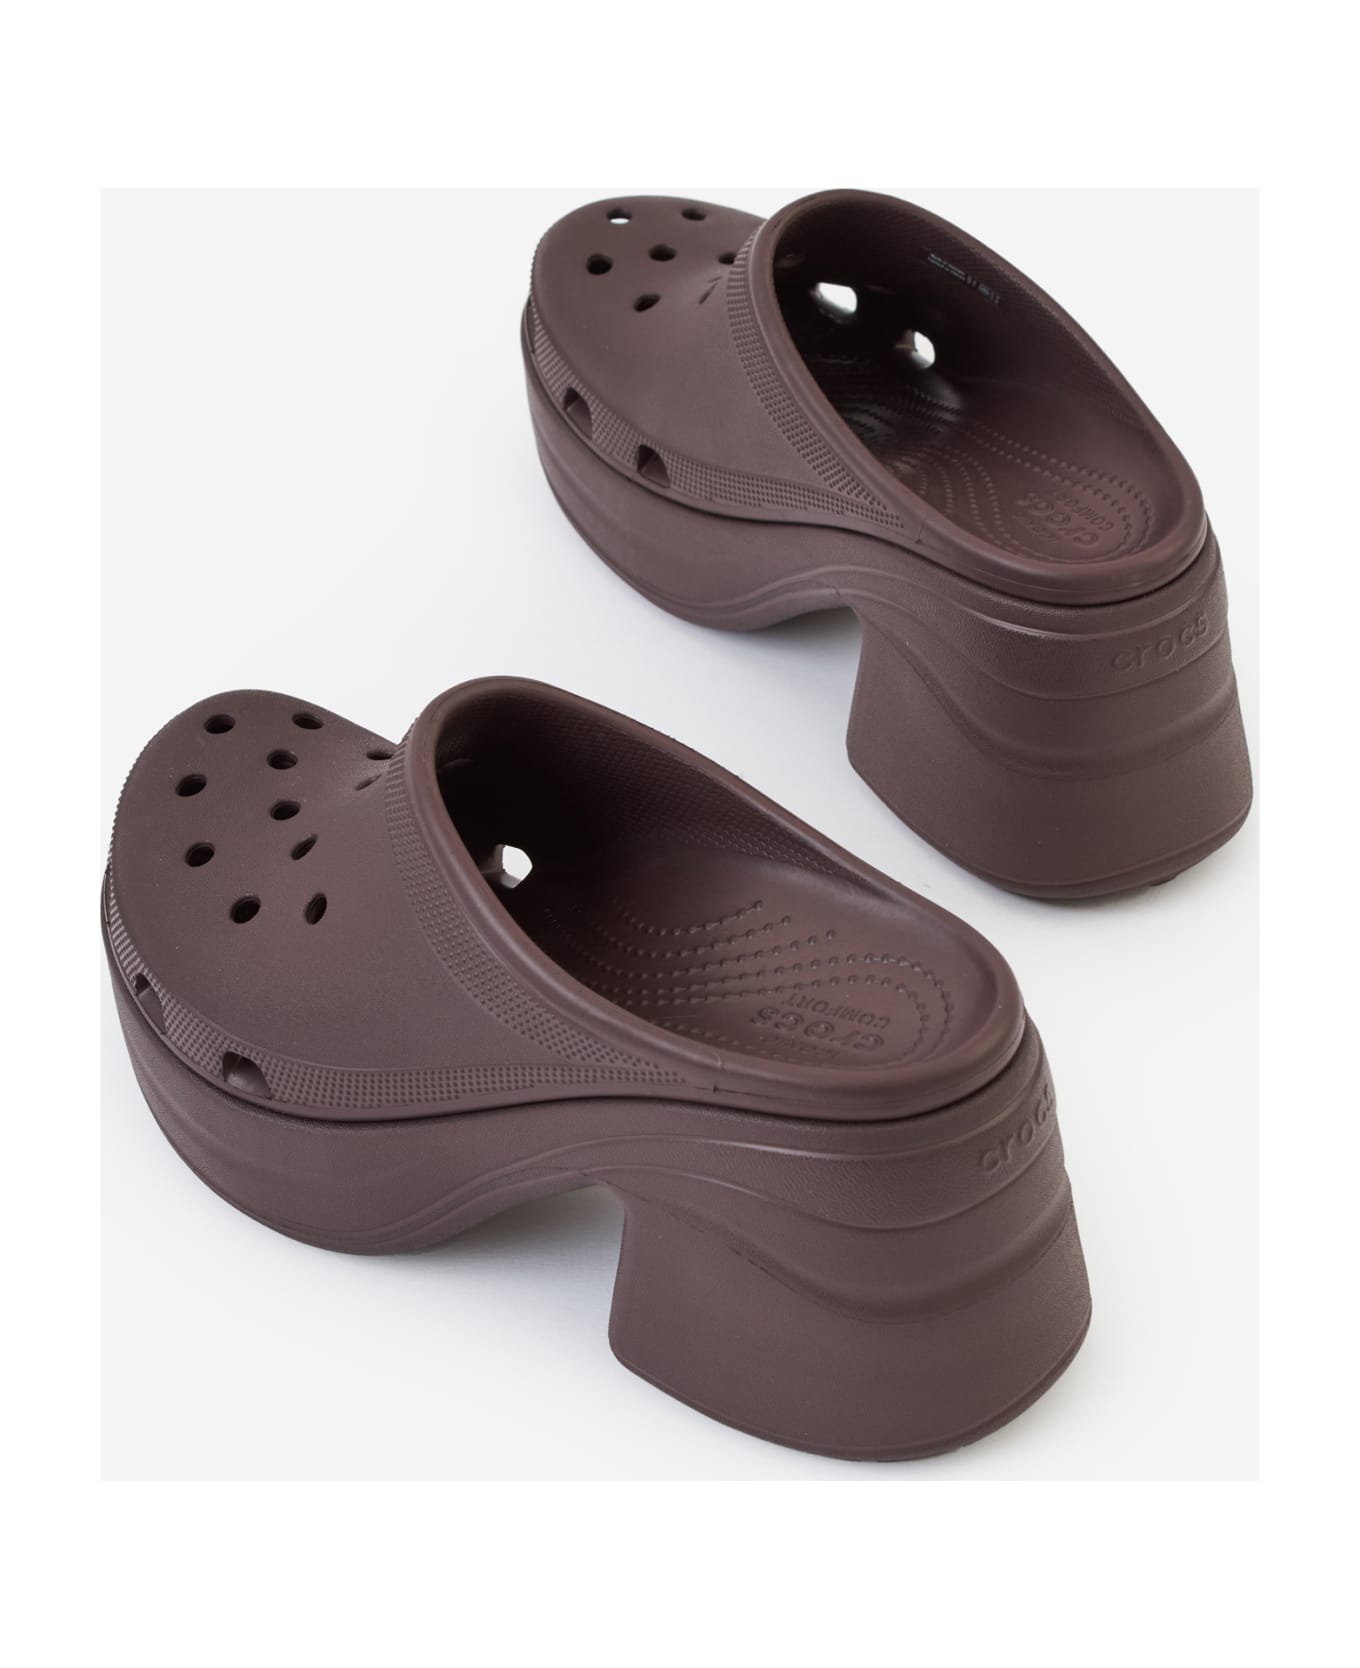 Crocs Siren Clog Sandals - bordeaux